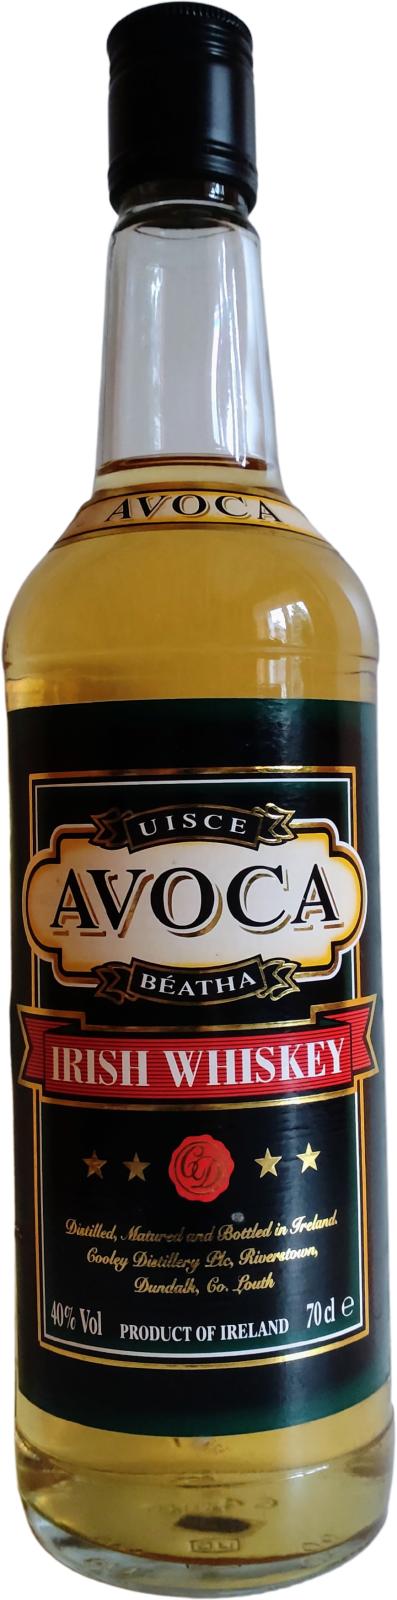 Avoca Irish Whisky oak casks Aldi Ireland 40% 700ml